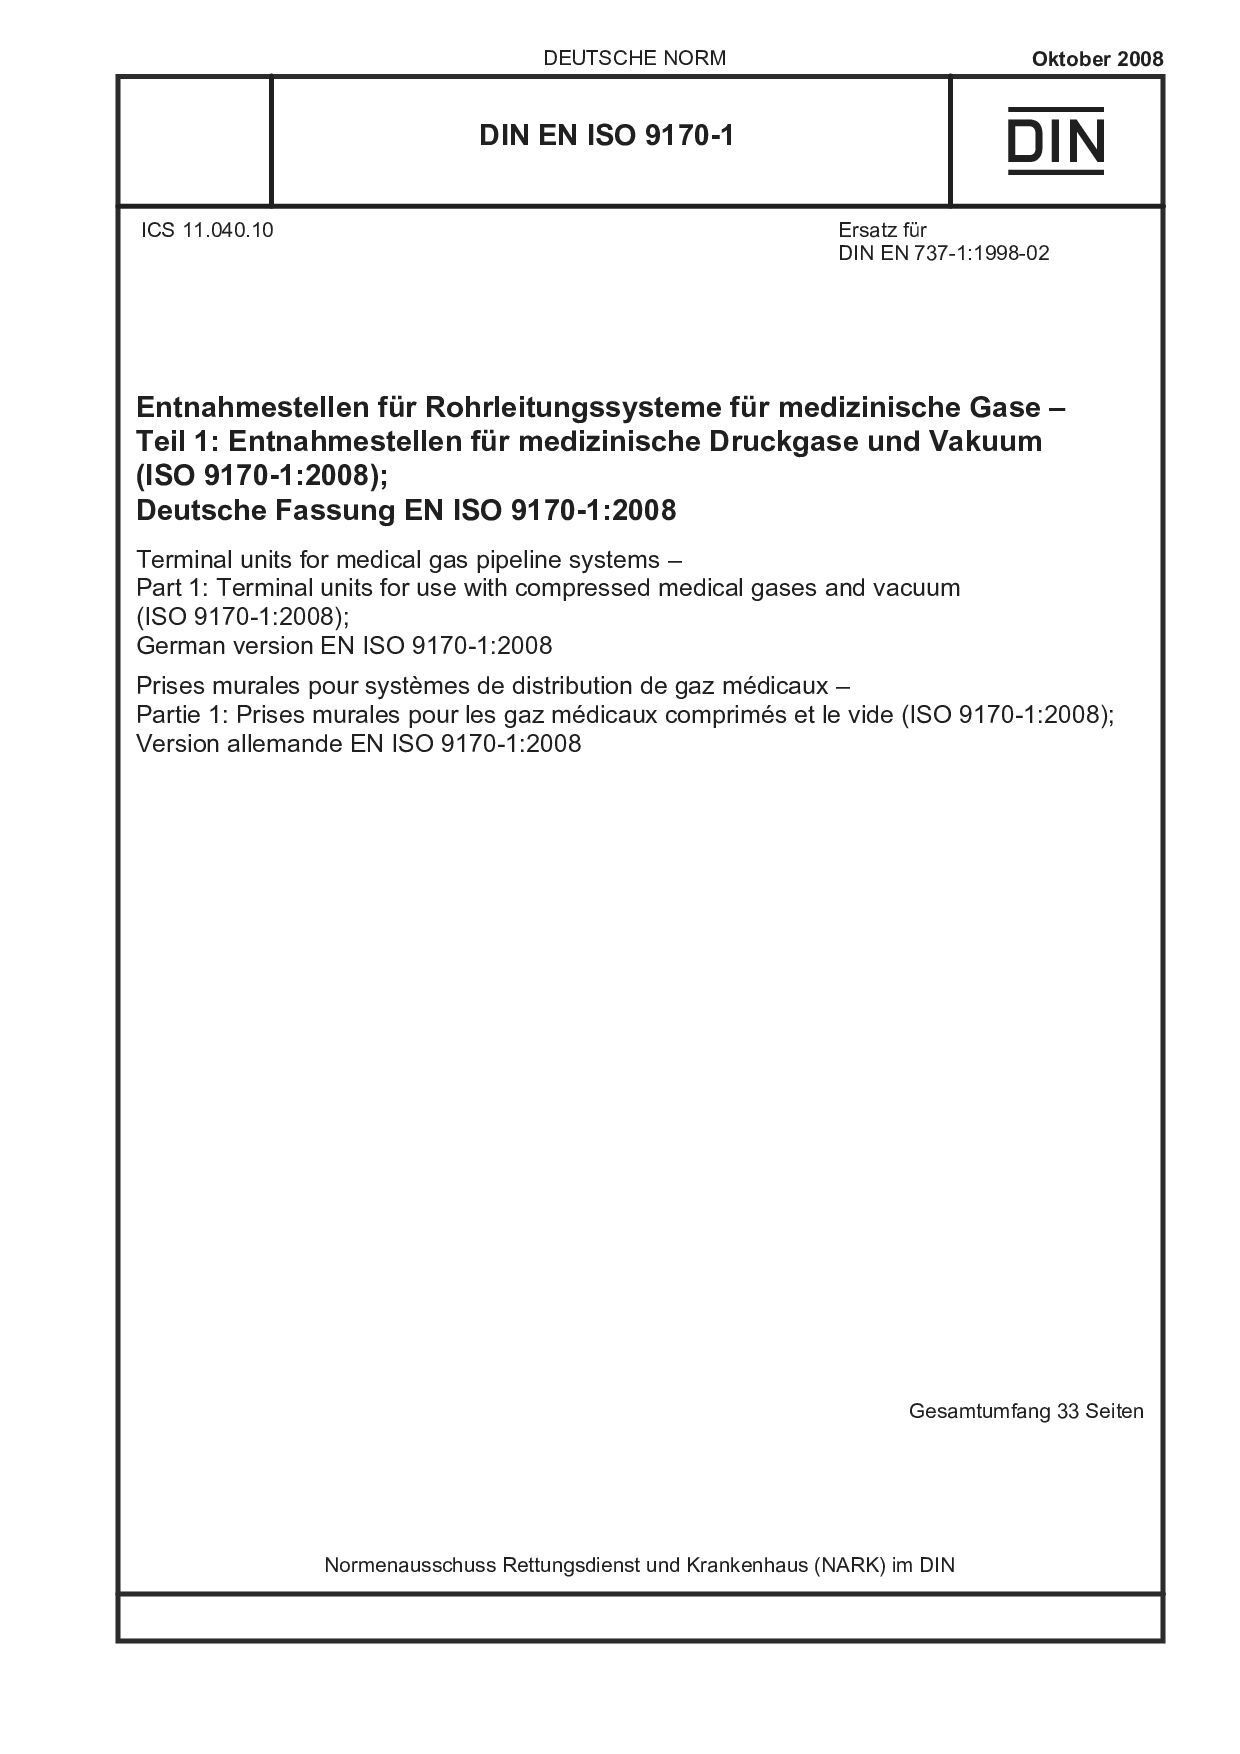 DIN EN ISO 9170-1:2008封面图